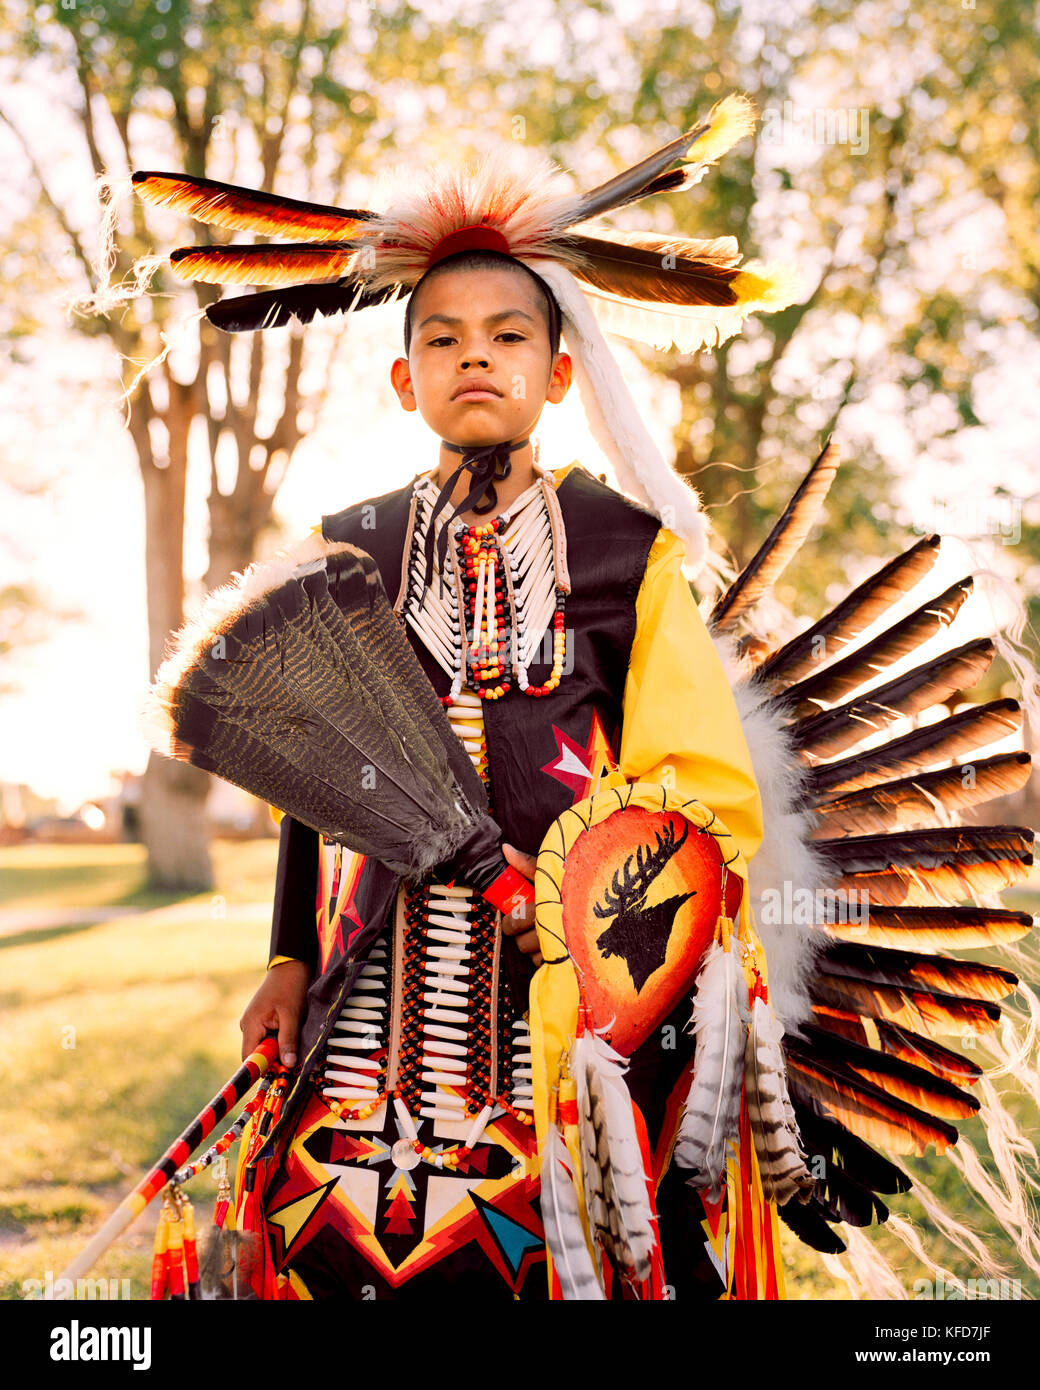 Navajo Indian Clothing